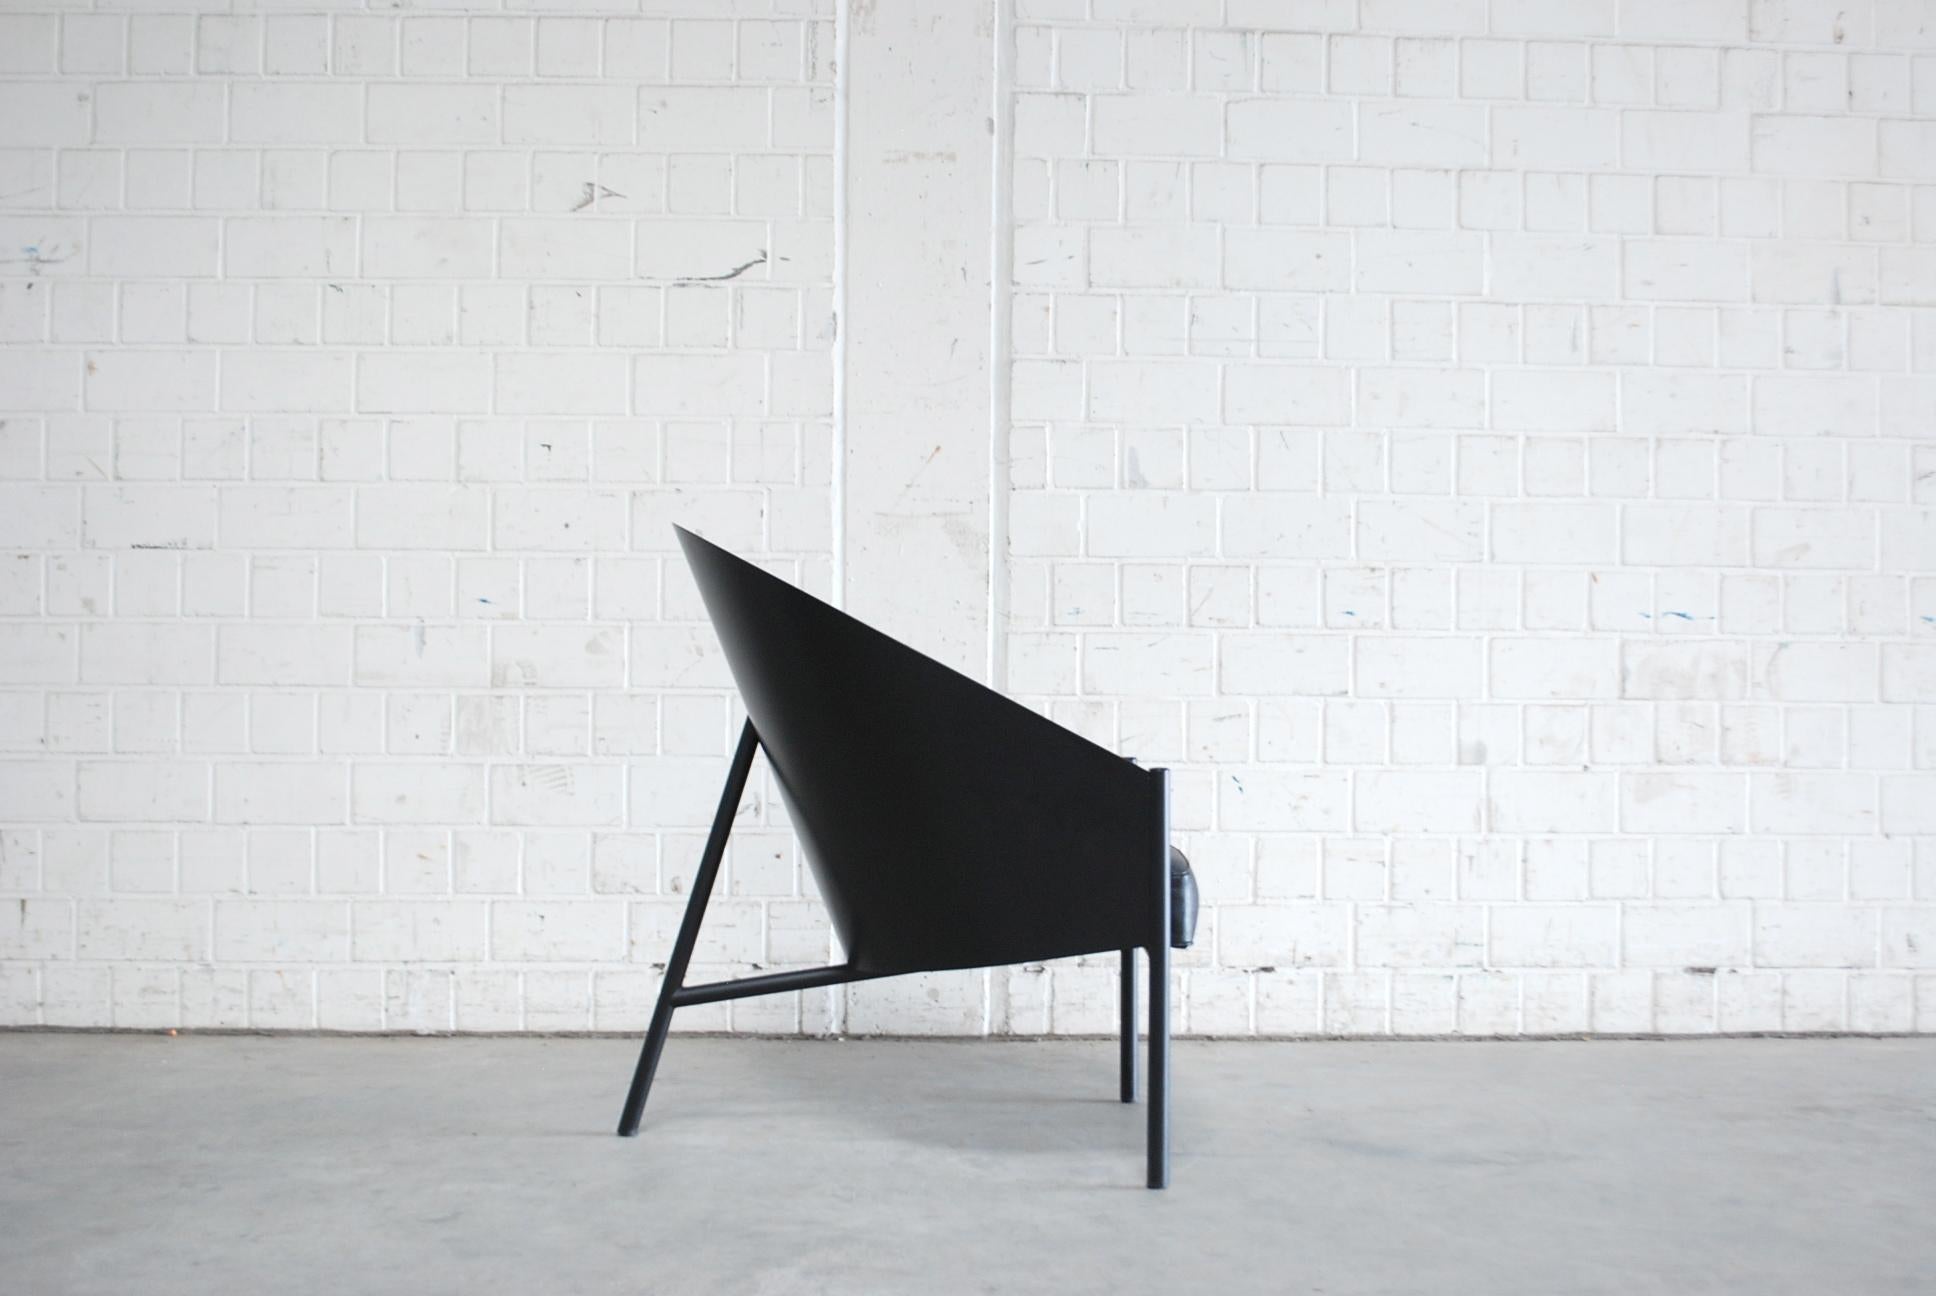 Sessel Modell Pratfall von Philippe Starck für den italienischen Hersteller Driade Aleph.
Schwarzes Leder und schwarz lackierte Sperrholzschale auf schwarzem Stahlrohr.
Dieser Sessel hat einen hohen Komfort. Viel größer als der Esszimmerstuhl